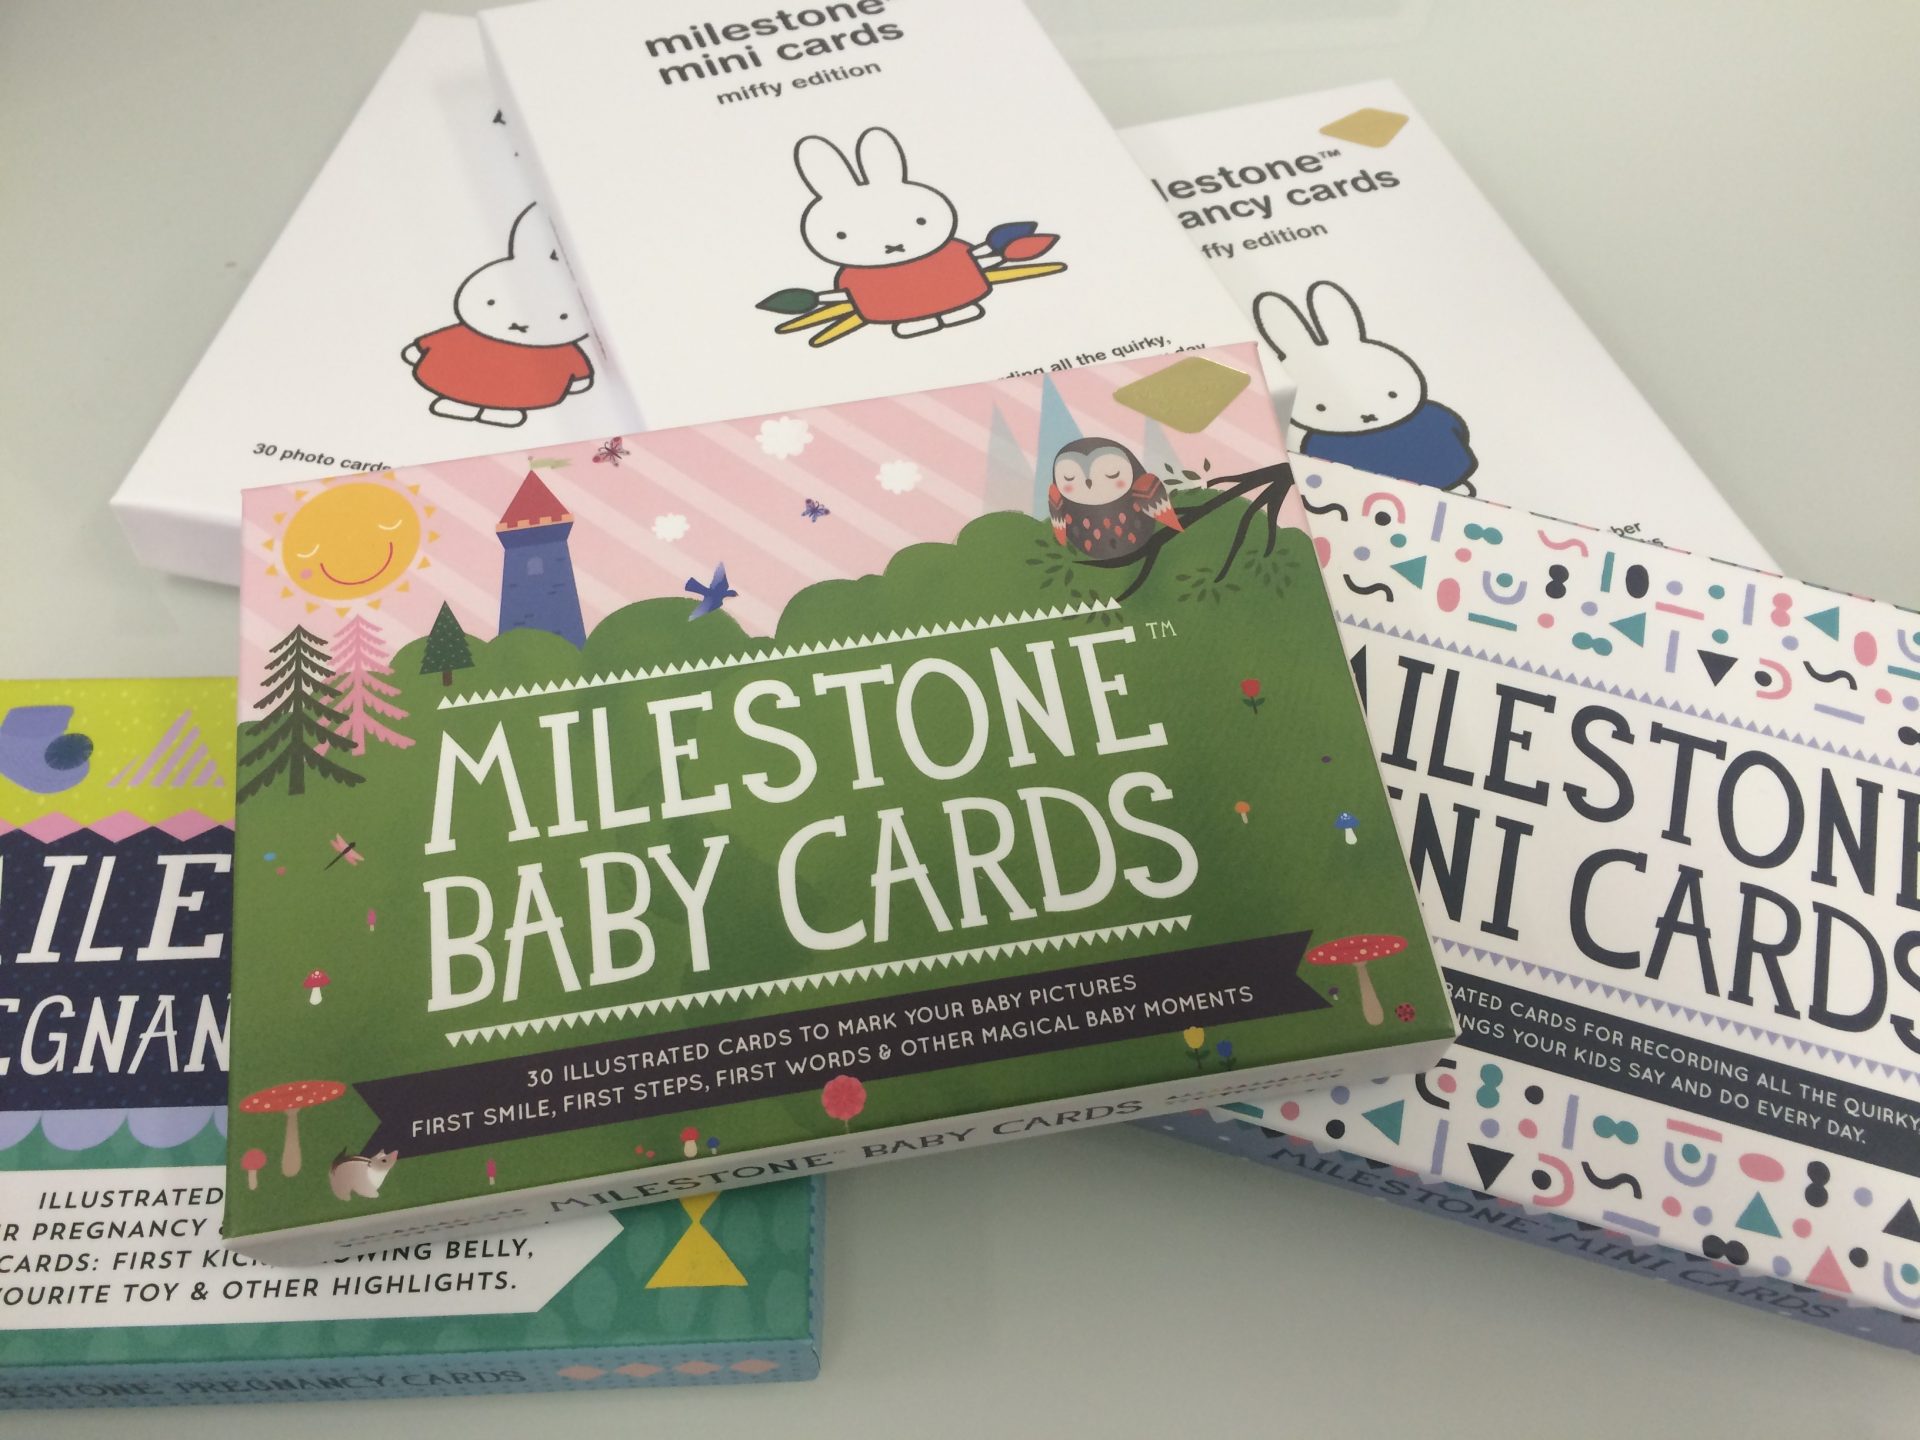 Celebrating Baby’s Milestones with Milestone Baby Cards